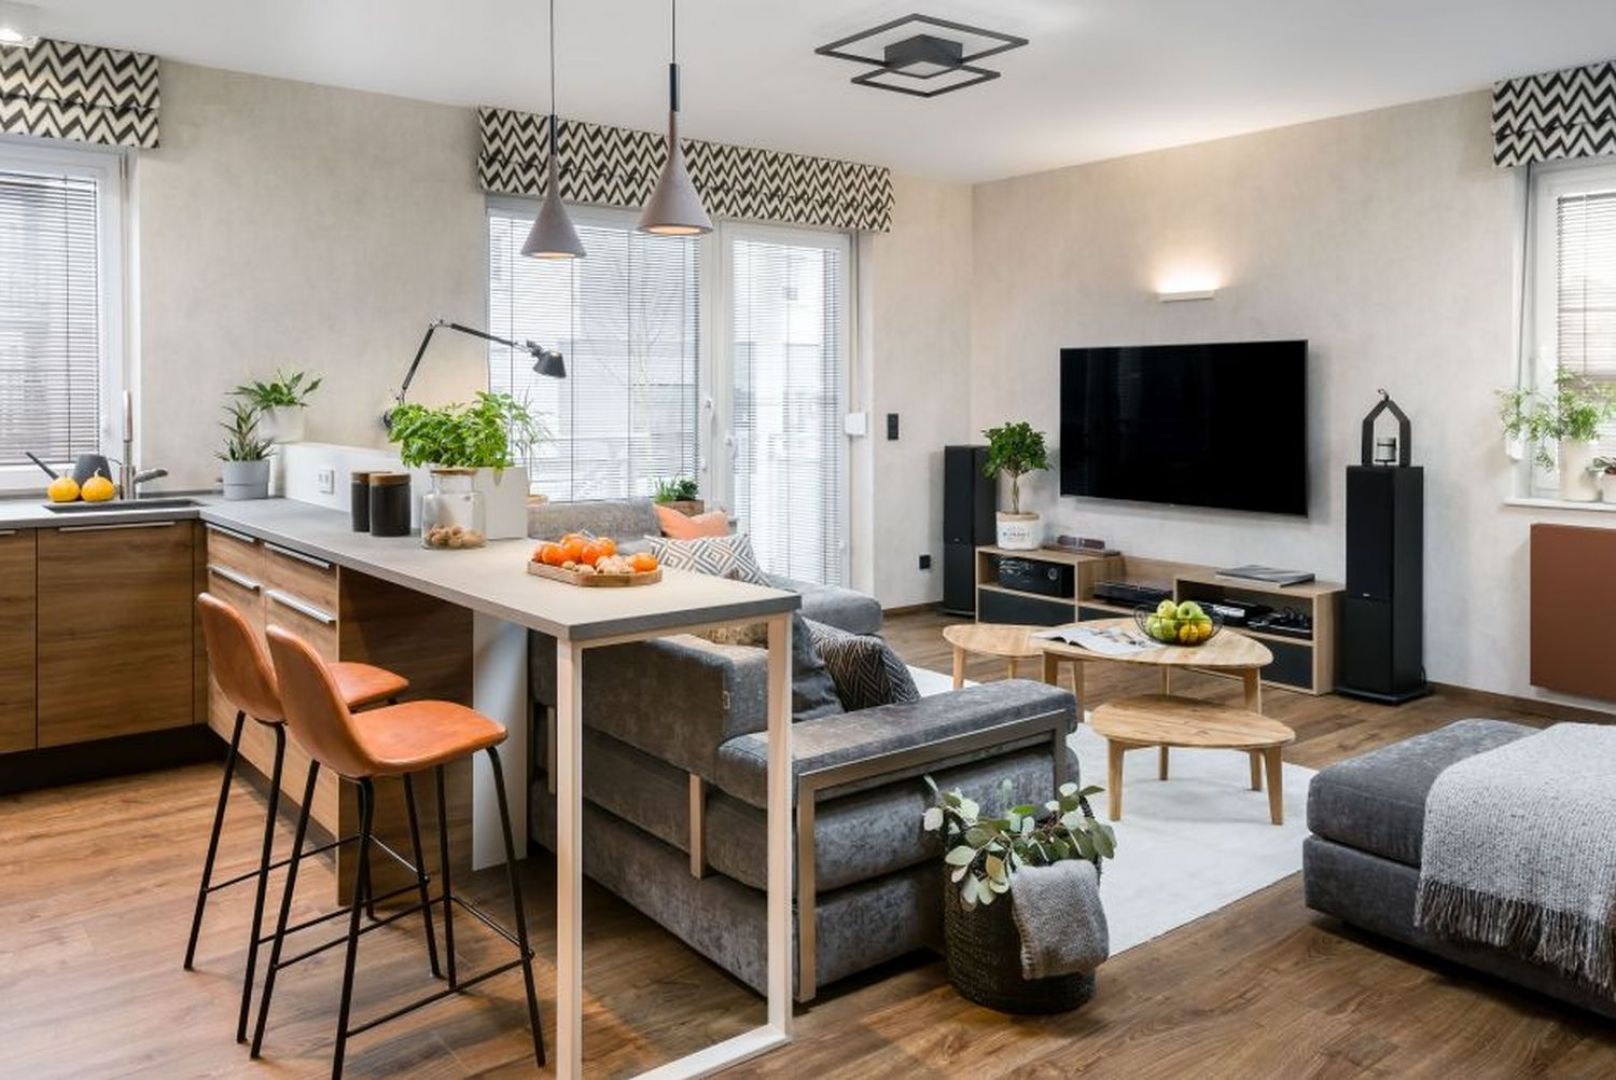 Przytulny salon z kuchnią i jadalnią w mieszkaniu w bloku. Projekt wnętrza: Katarzyna Krupa. Fot. Stan Zajączkowski